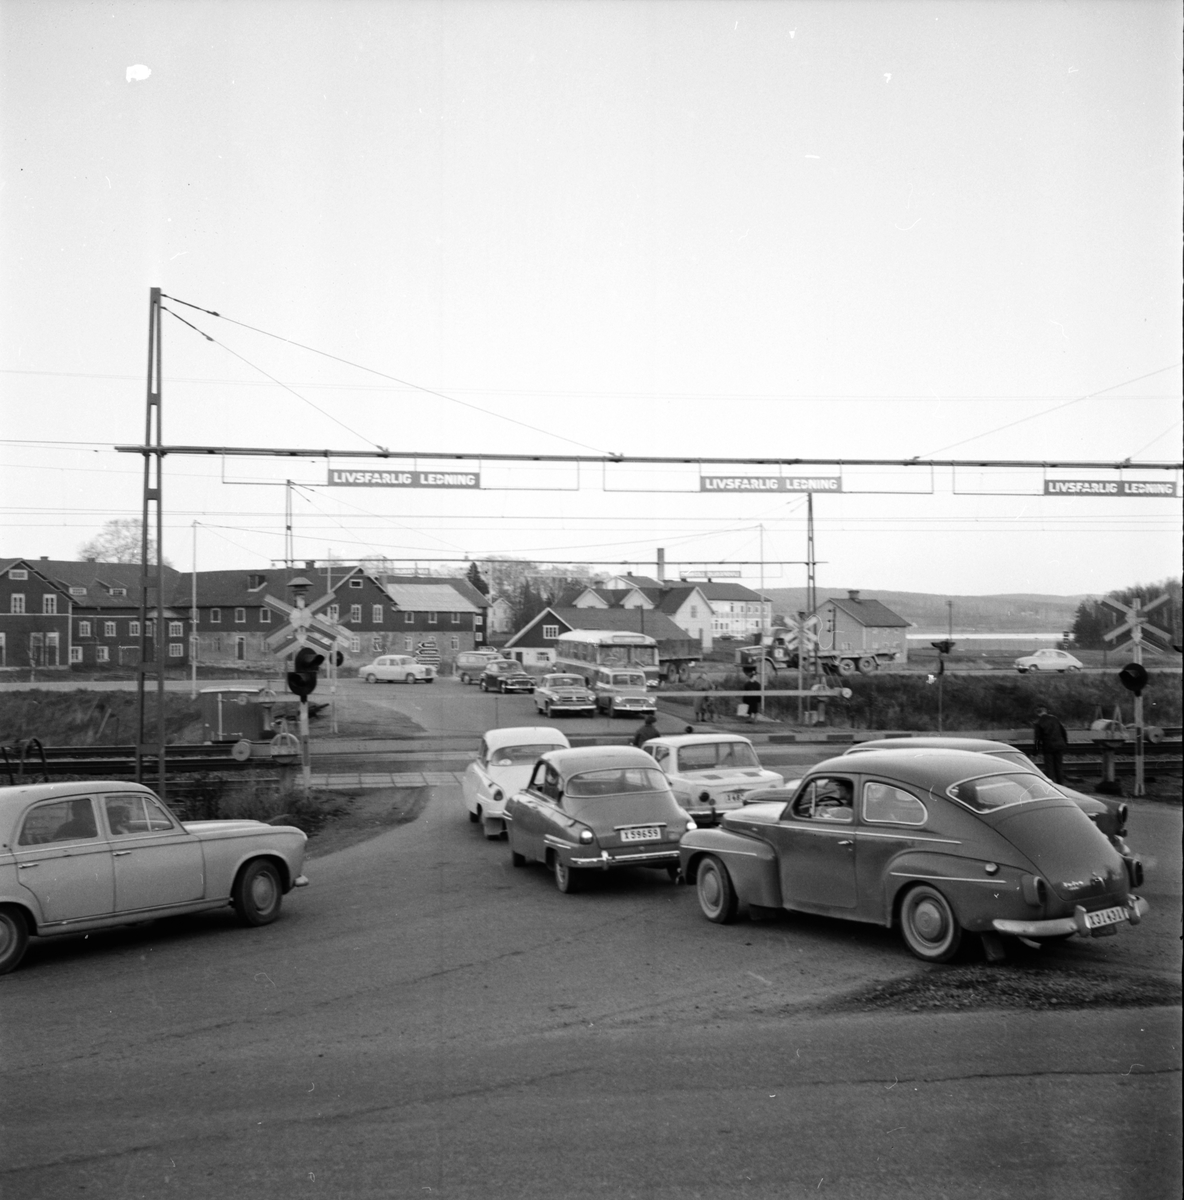 Bomeländet i Säversta,
27 Okt 1964